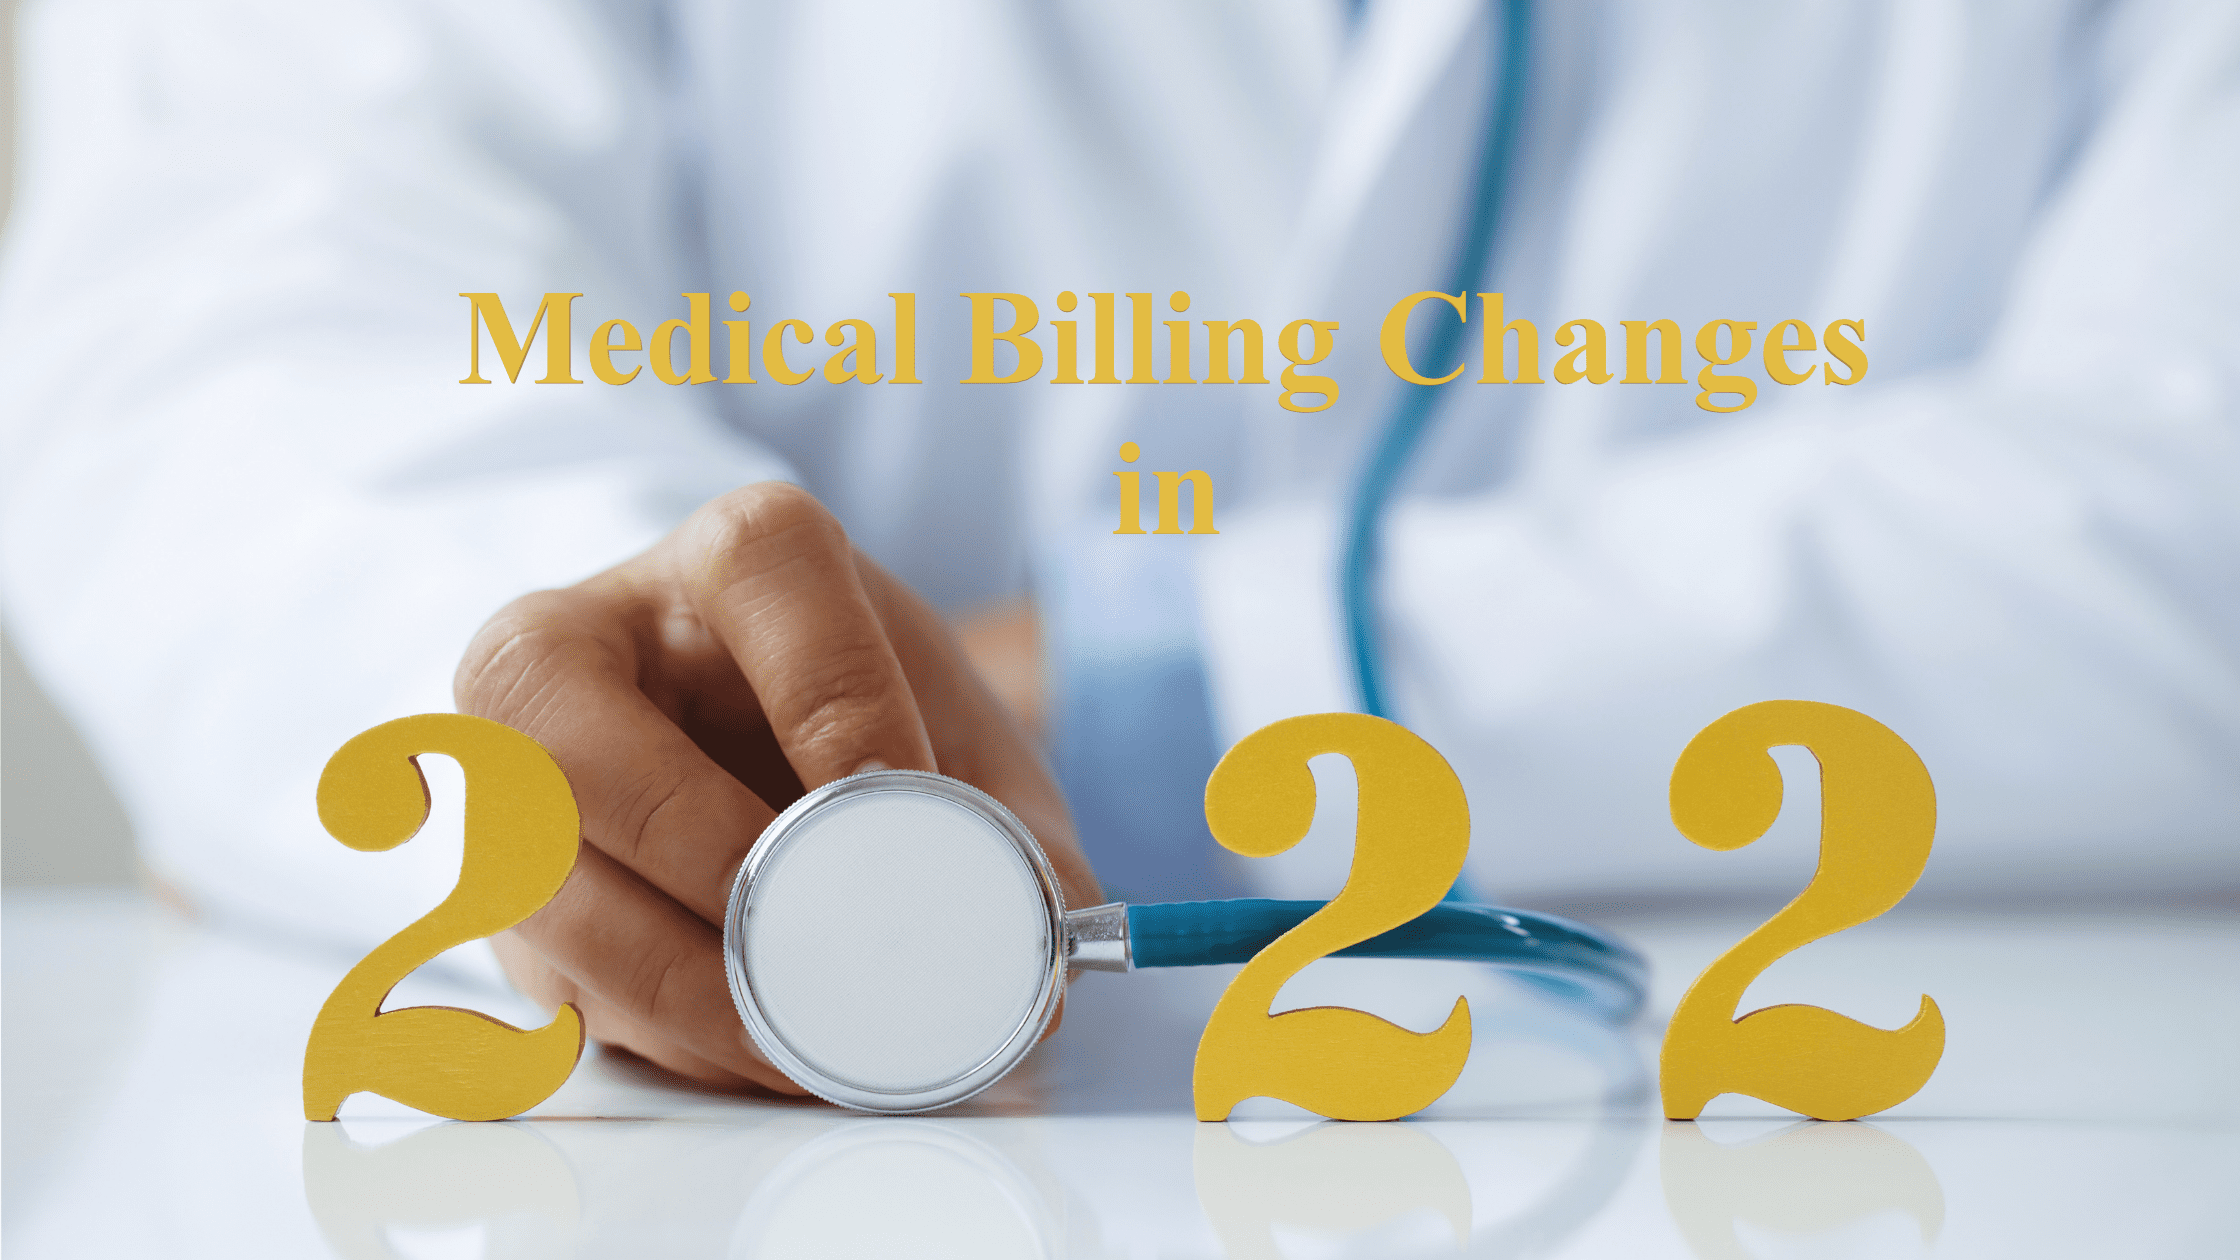 Medical Billing Changes in 2022